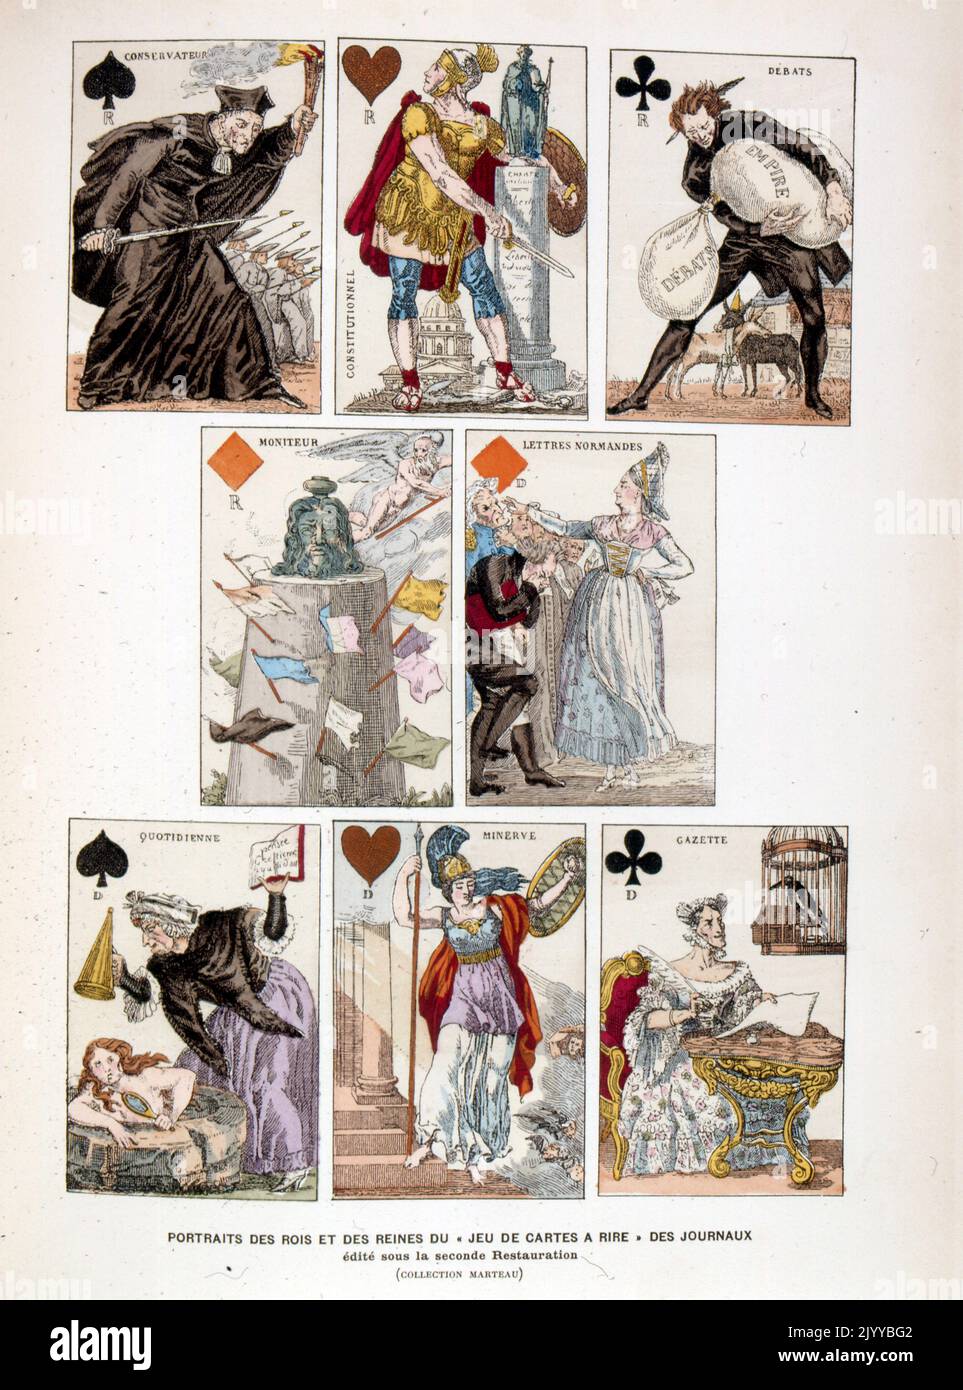 Illustration colorée de cartes à jouer de portraits de rois et de reines représentant des scènes humoristiques de la presse papier publiée dans le cadre de la deuxième restauration. Banque D'Images